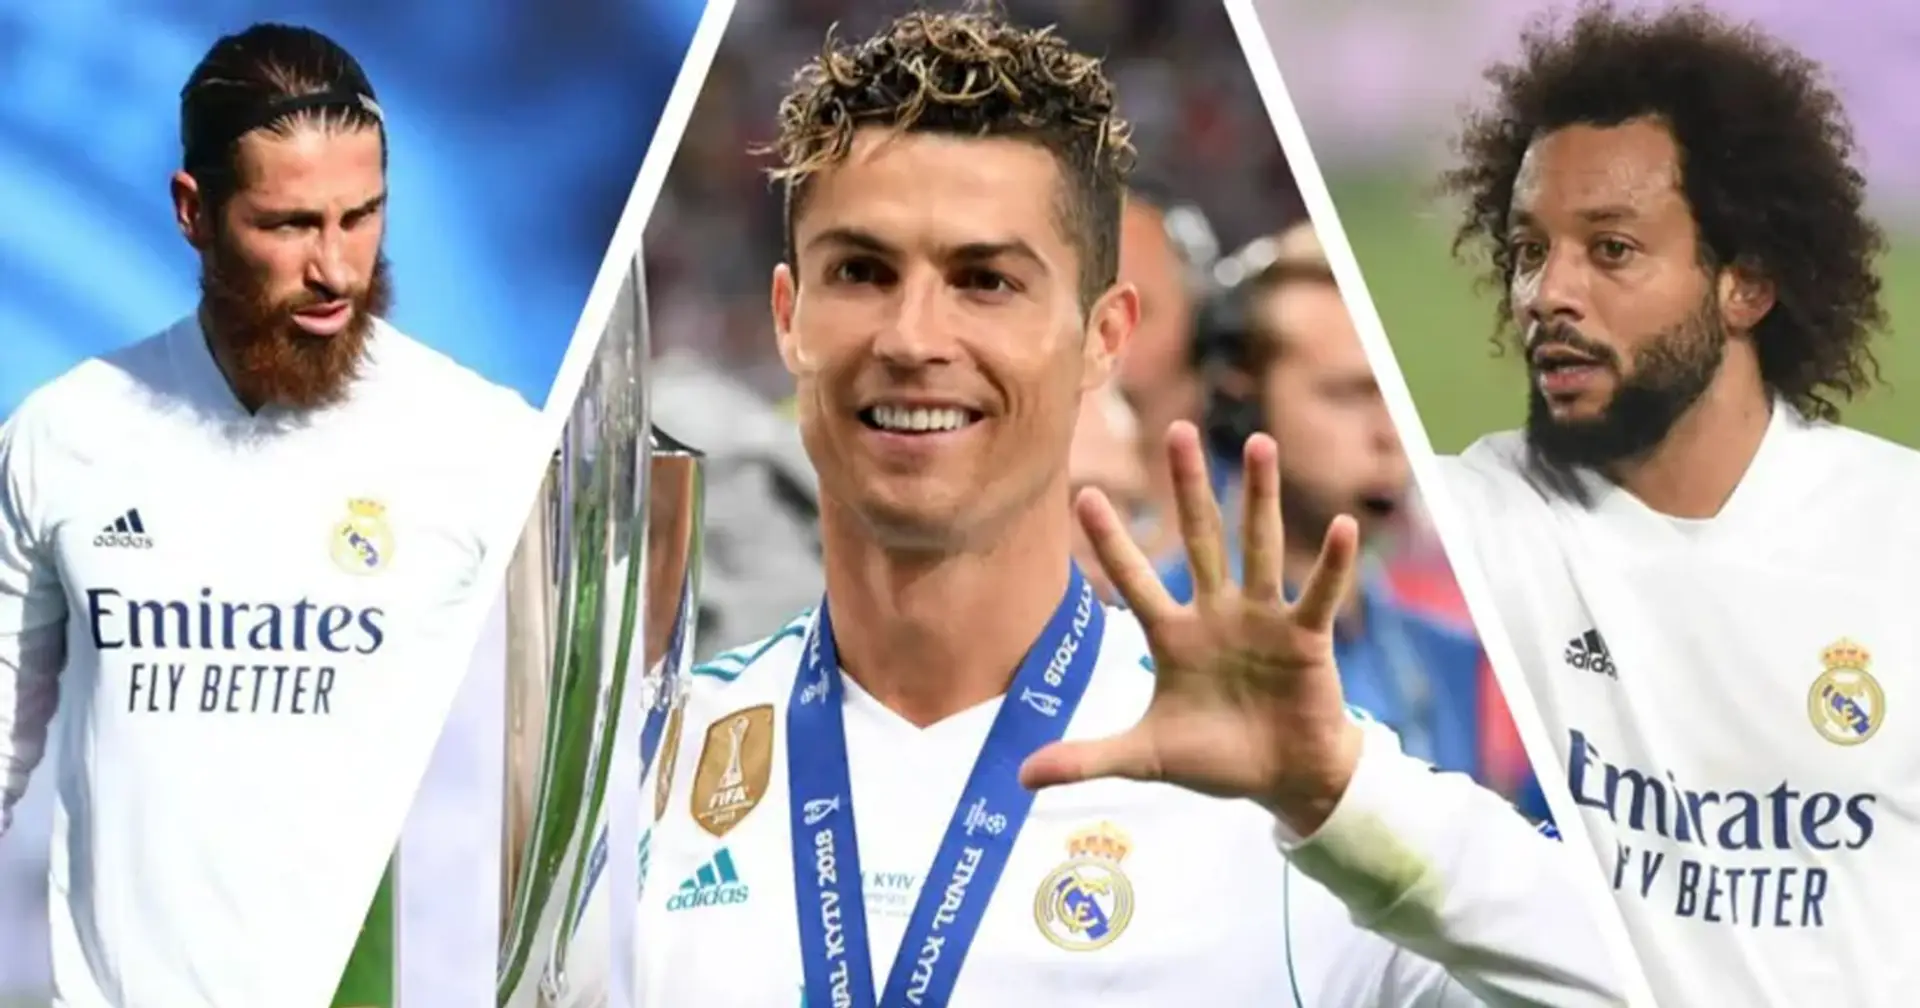 2 jugadores actuales y 4 ex estrellas del Madrid entre los 10 mejores futbolistas con más seguidores en las redes sociales